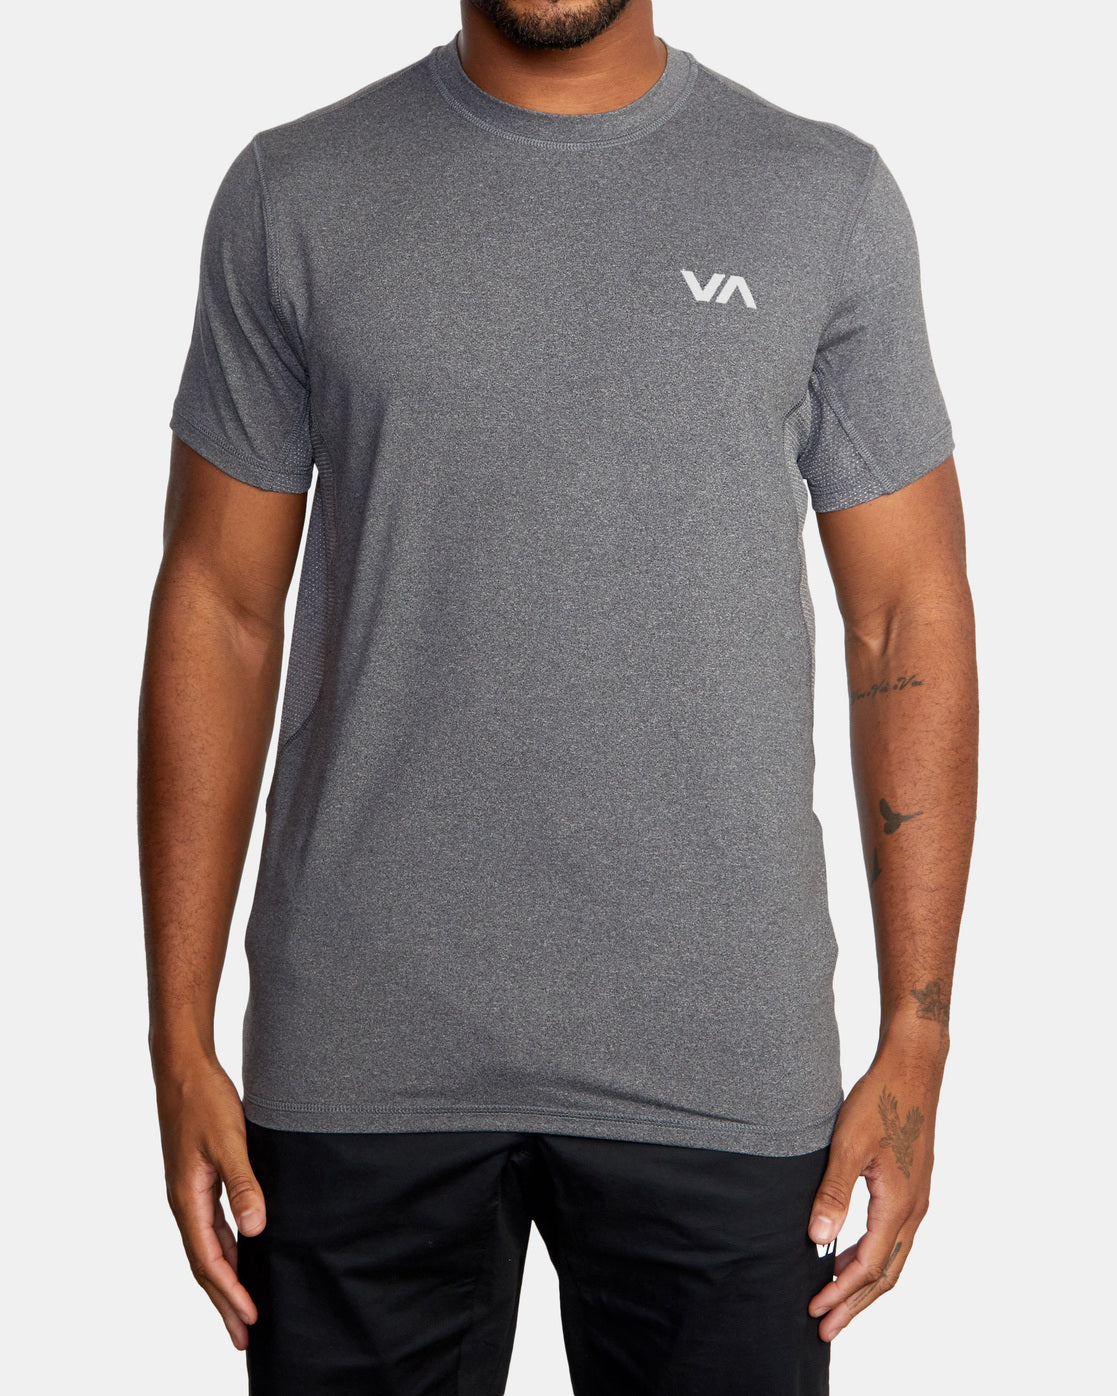 Camiseta Técnica Rvca VA Sport Vent - Charcoal Heather